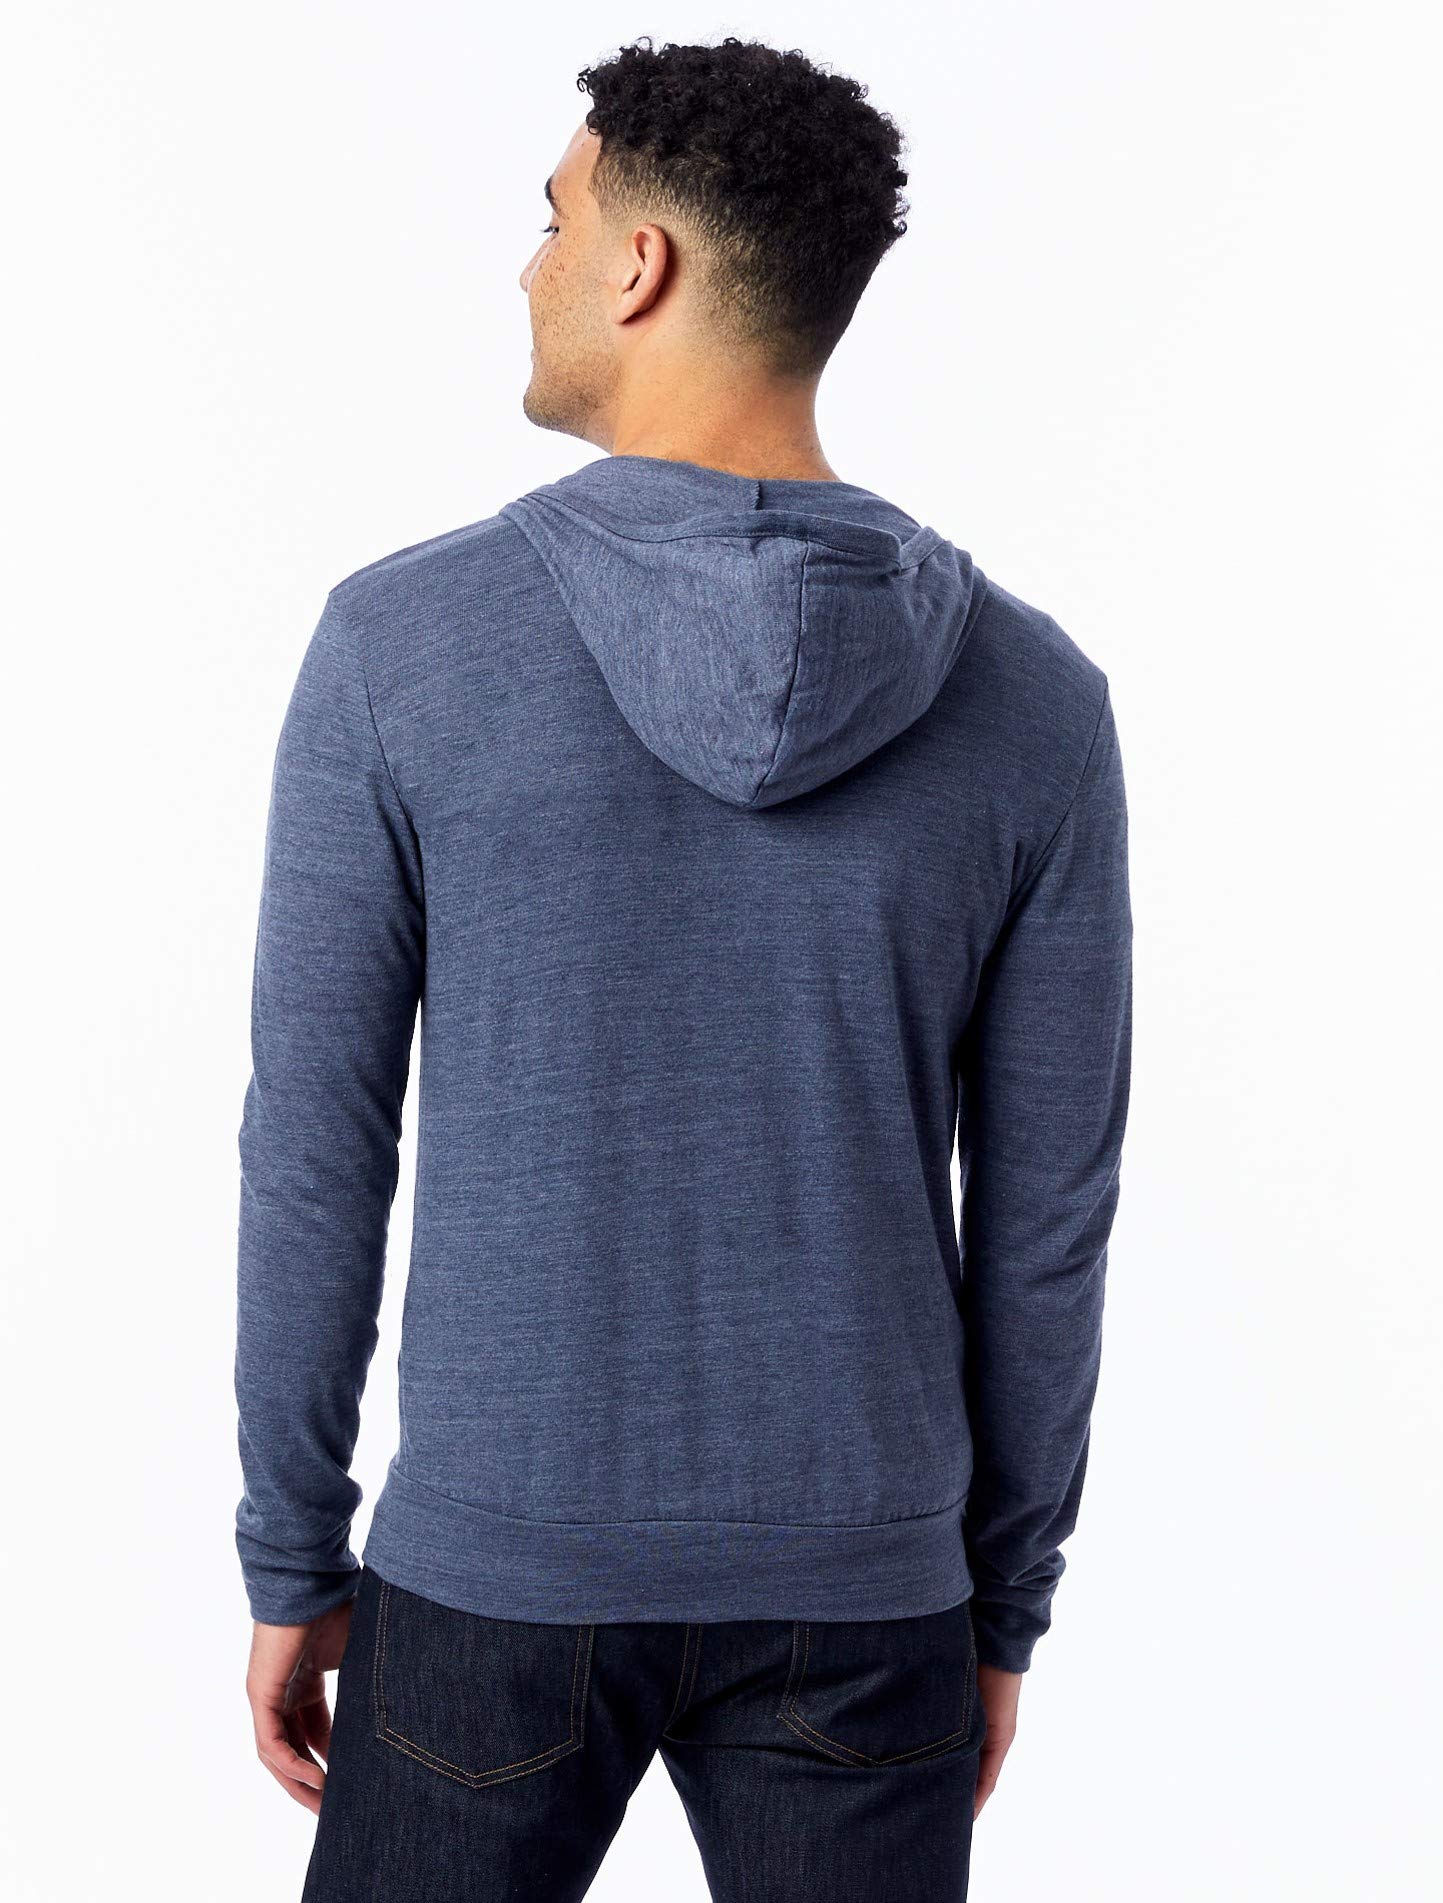 Alternative Men's Hoodie, Eco Zip Up Camo Triblend Jersey Hooded Sweatshirt